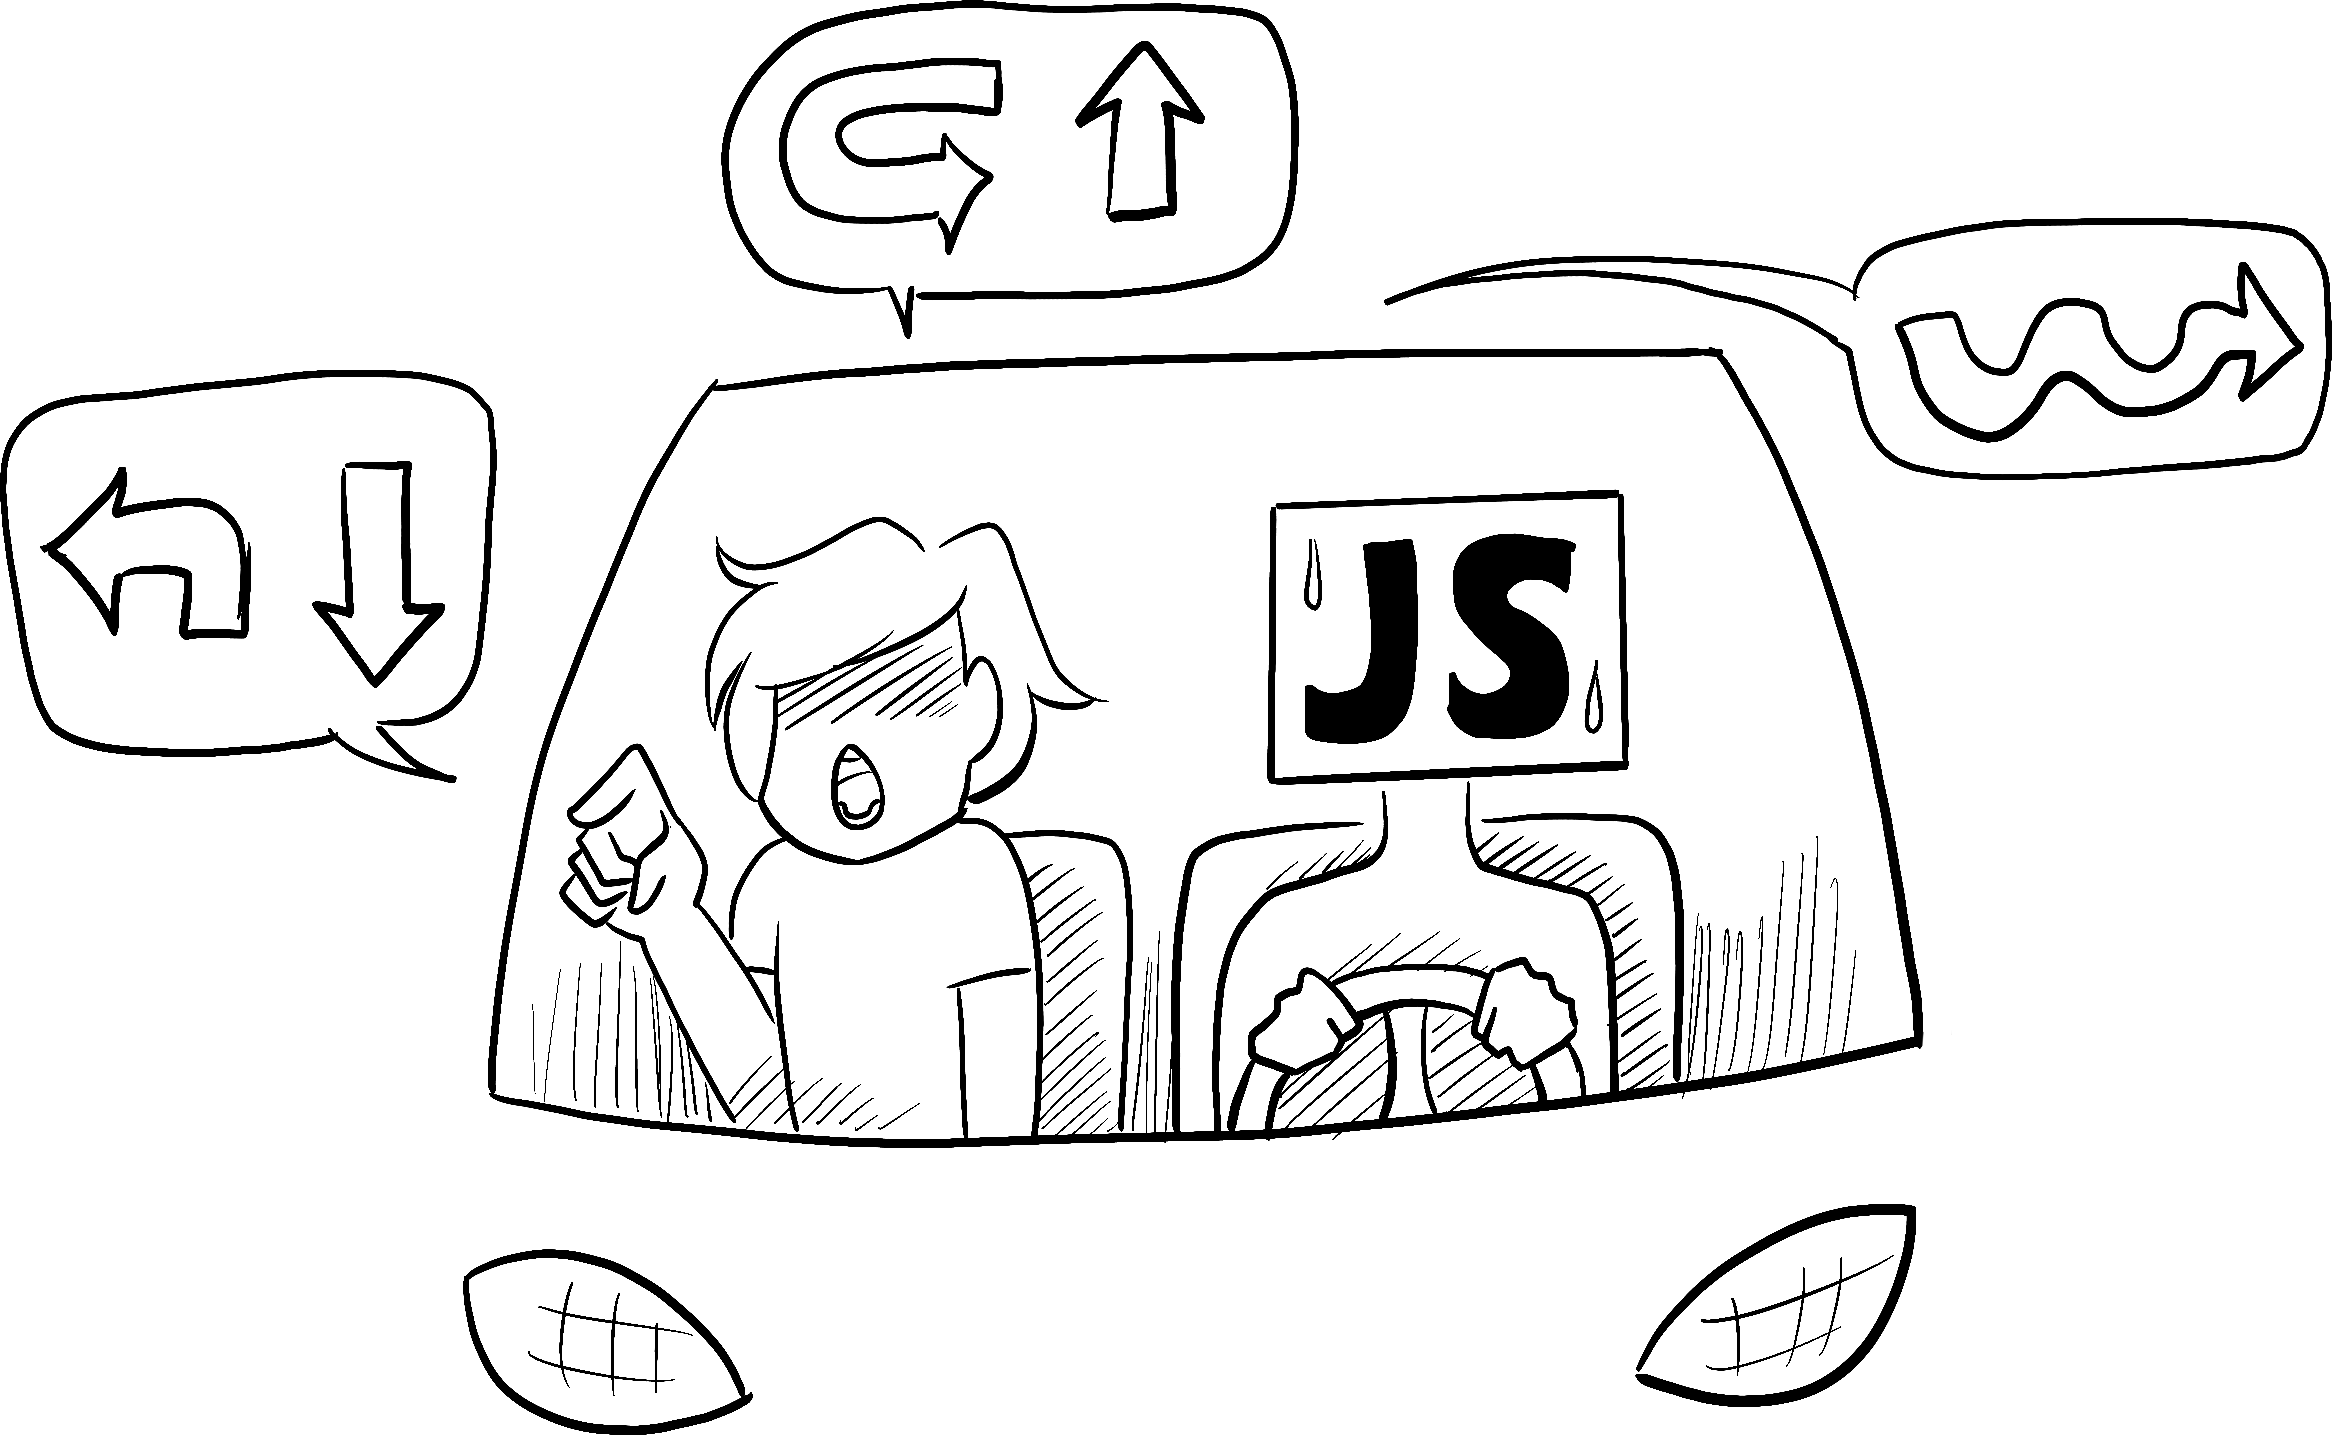 看起来很焦急的司机代表 JavaScript，乘客命令司机执行一系列复杂的转弯导航。